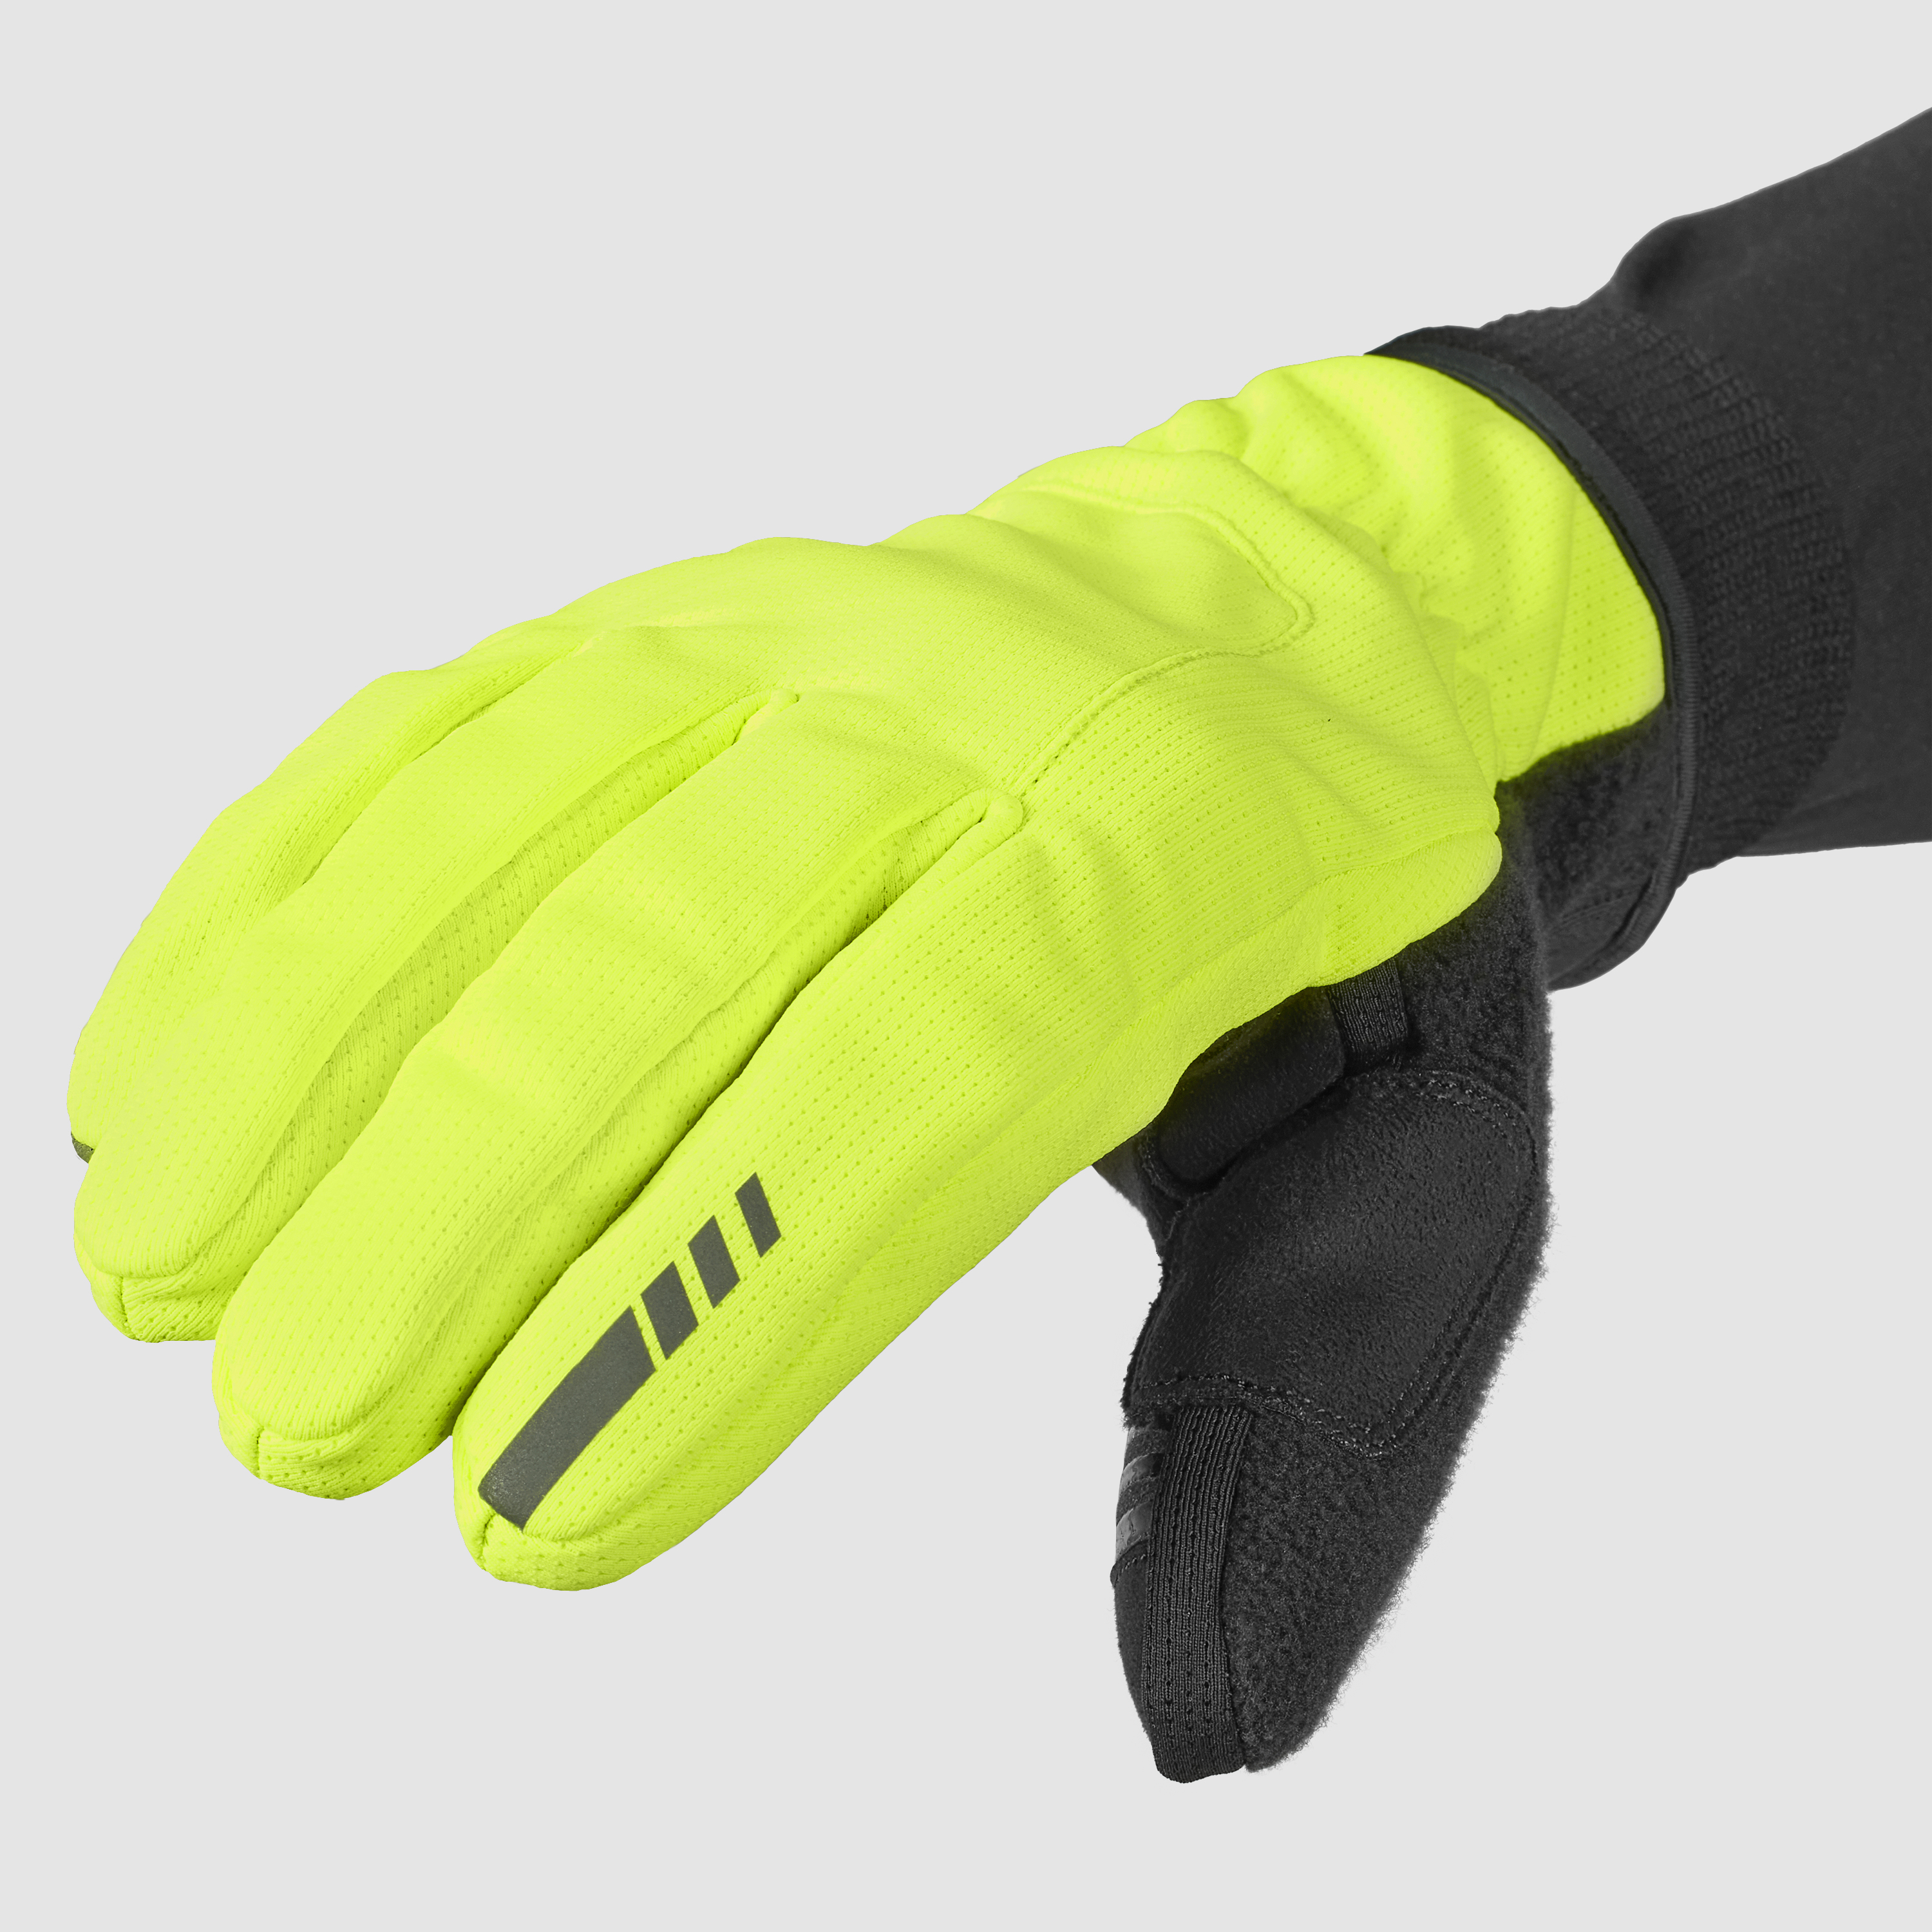 Windster 2 Windproof Winter Gloves Yellow Hi-Vis